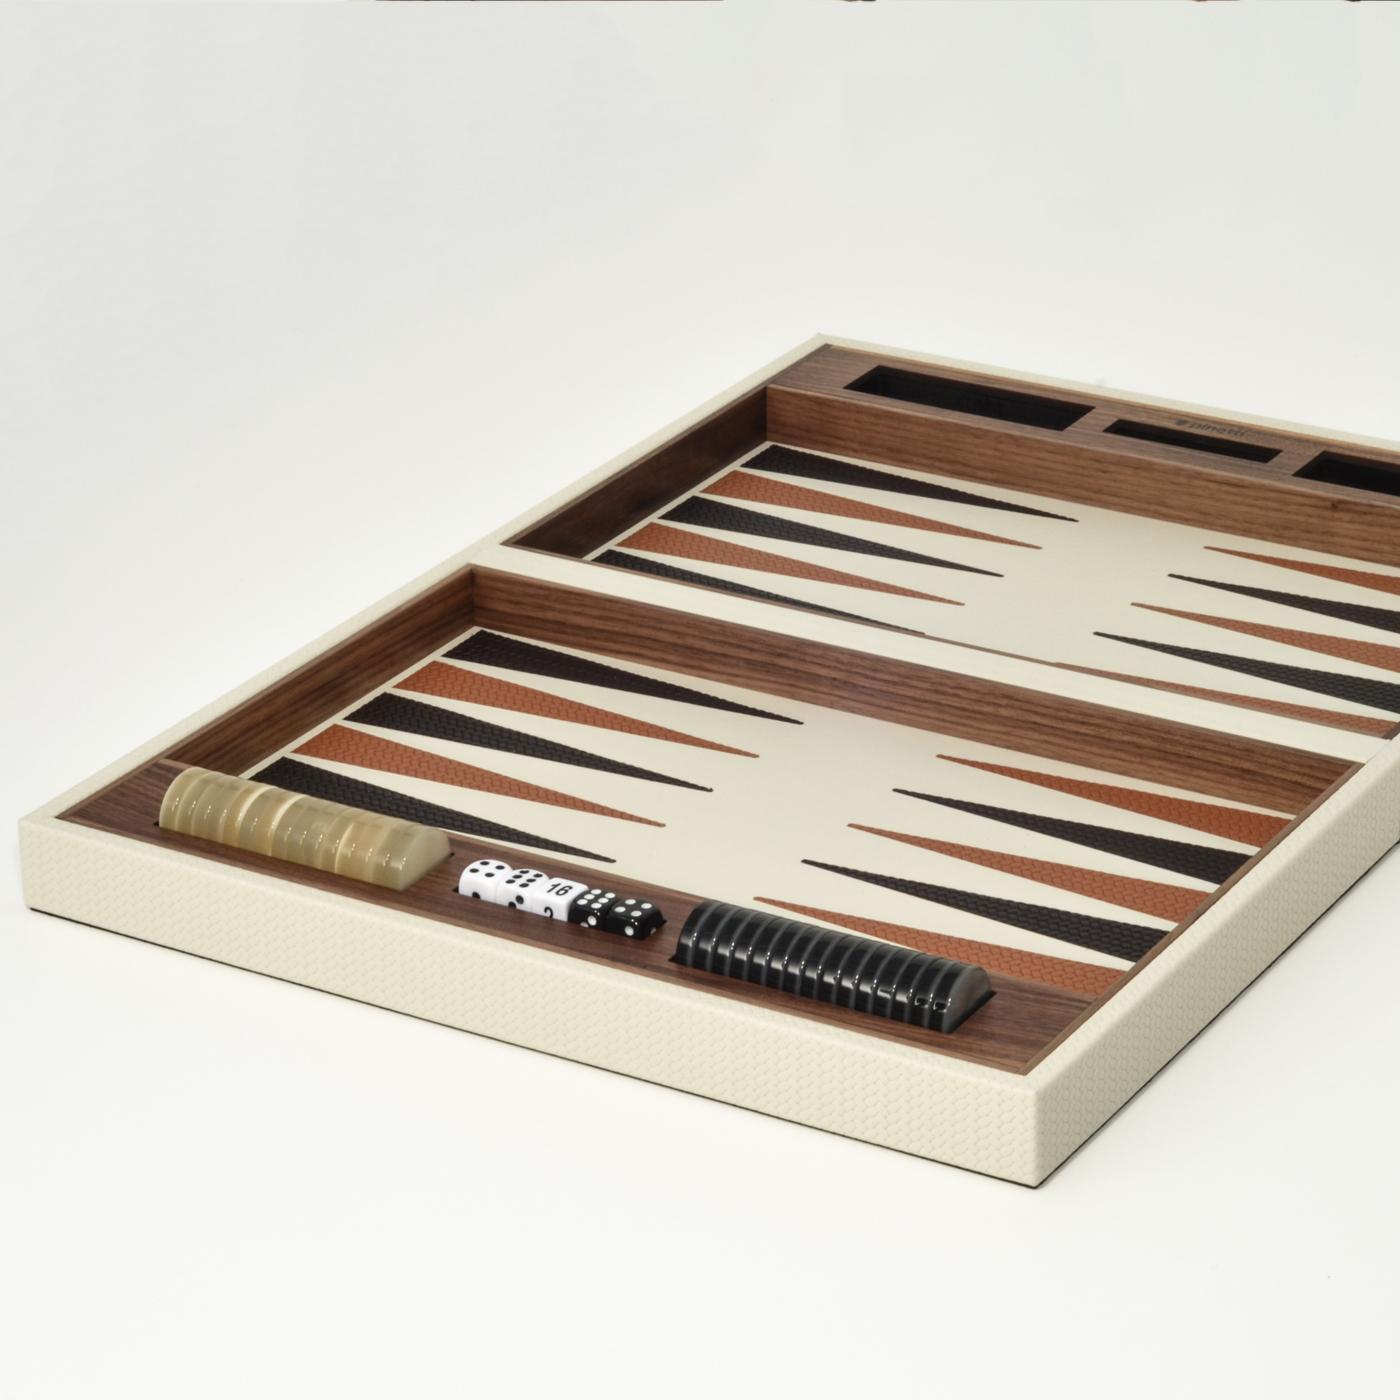 Dieses dynamische und unvorhersehbare Backgammon-Brettspielset setzt sowohl in modernen als auch in traditionellen Interieurs großzügige Akzente. Die Setbox ist ausschließlich aus Canaletto-Nussbaumholz gefertigt, das Innere besticht durch ein